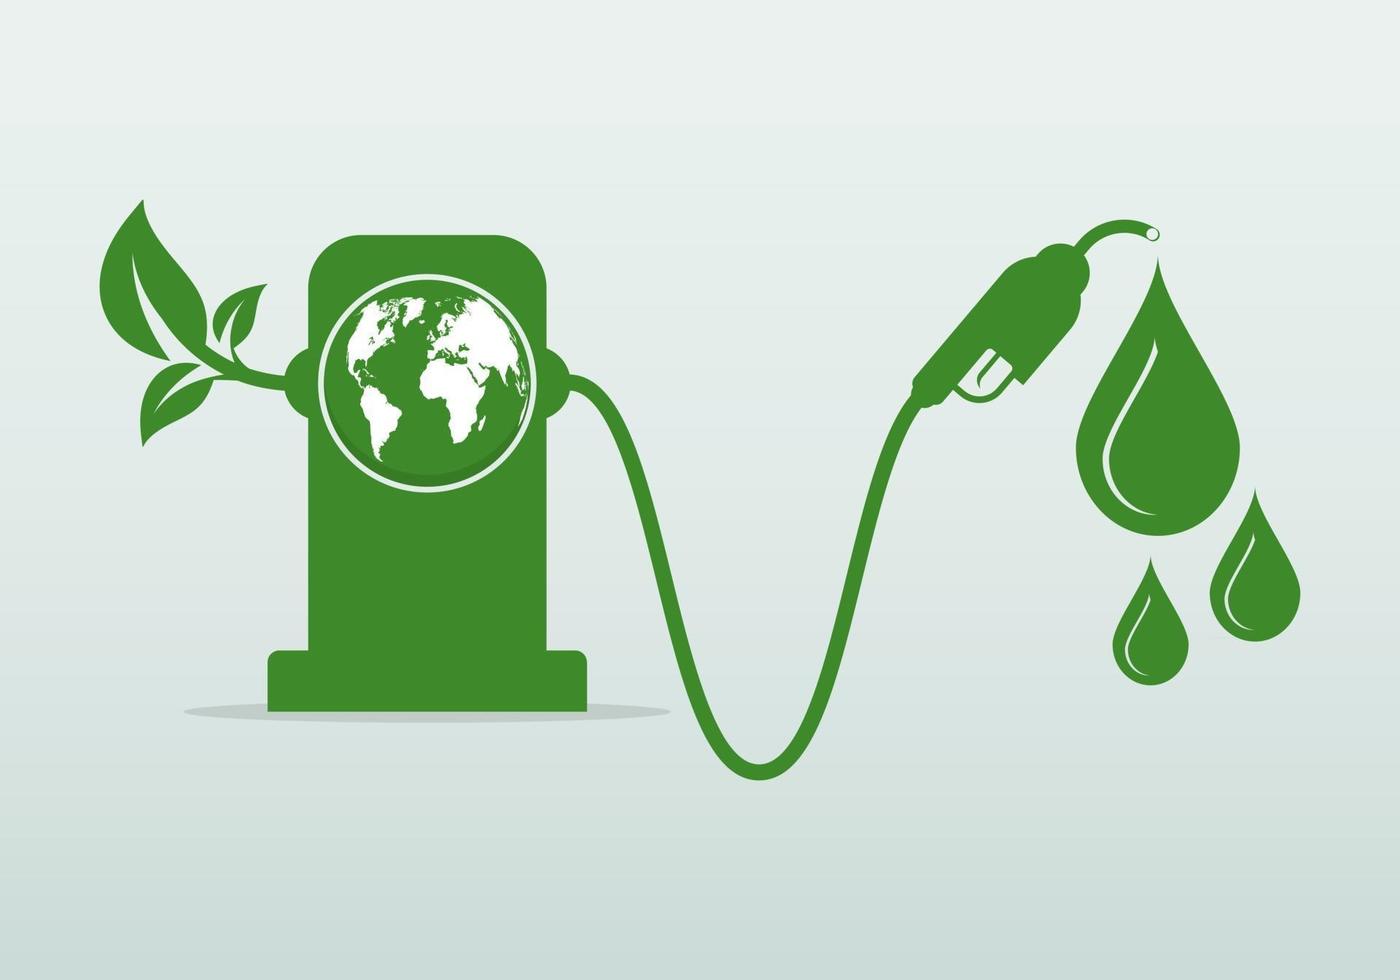 Internationaler Biodieseltag 10. August für Ökologie und Umwelt helfen der Welt mit umweltfreundlichen Ideen vektor